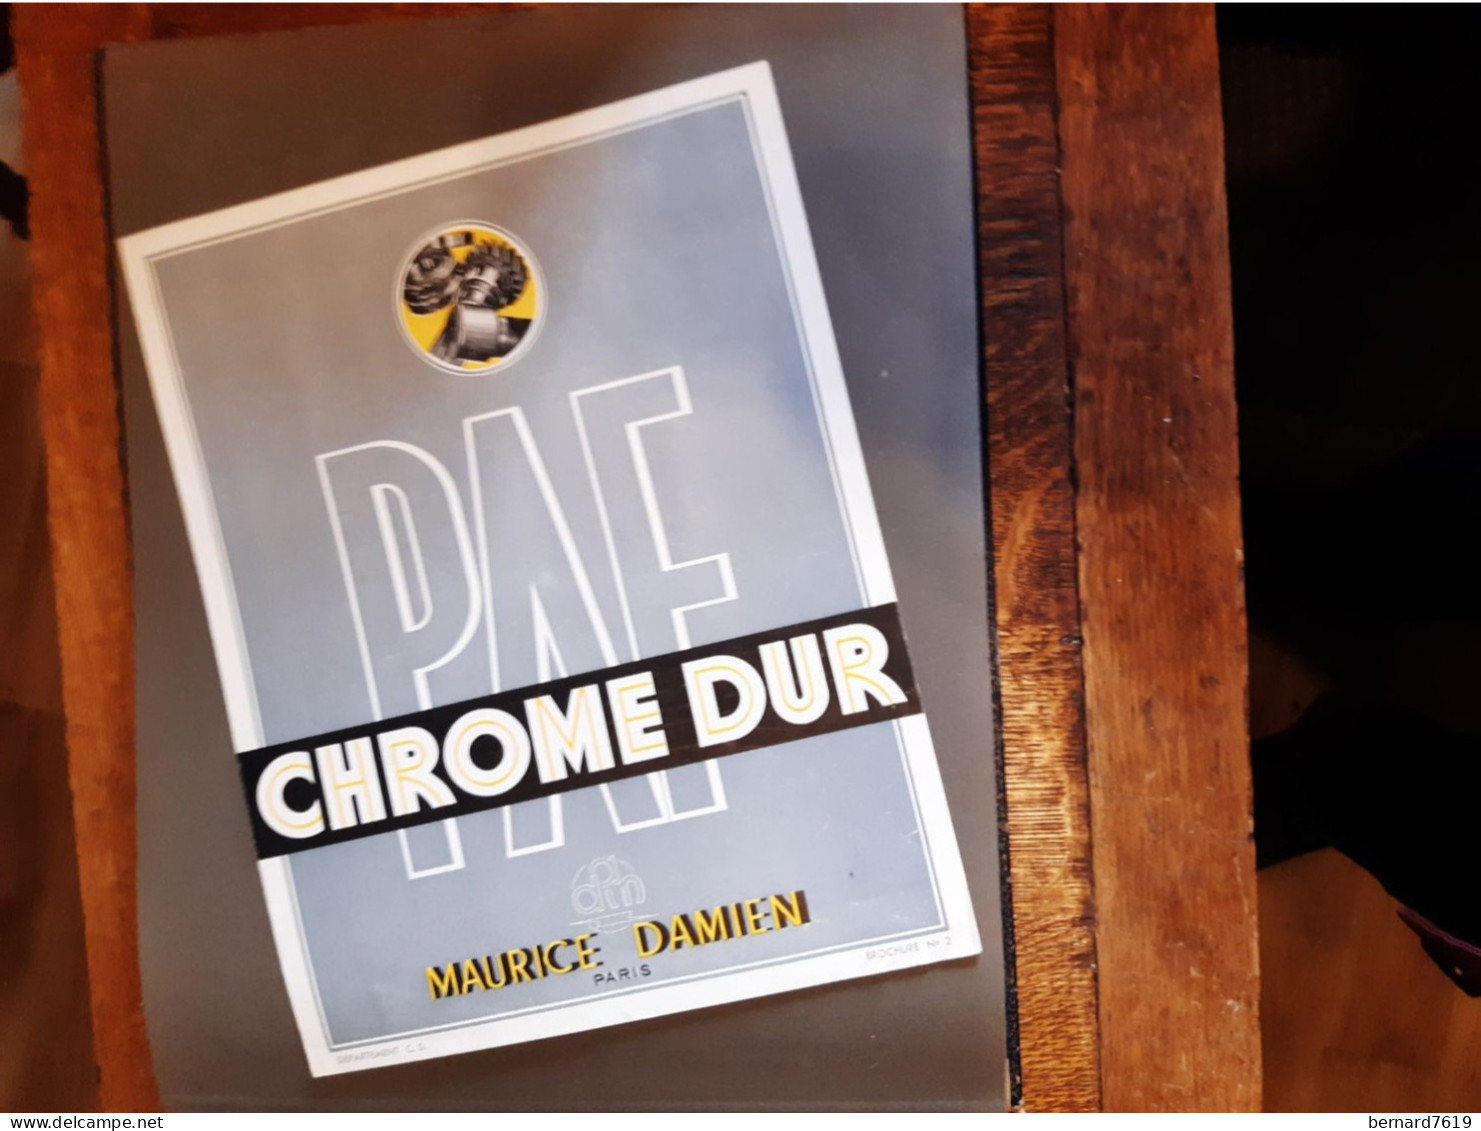 Publicite Annee Vers  1950 - Chrome Dur  Maurice Damien Paris - Byrrh - La Telephonie Francaise Paris 75011 - Publicités